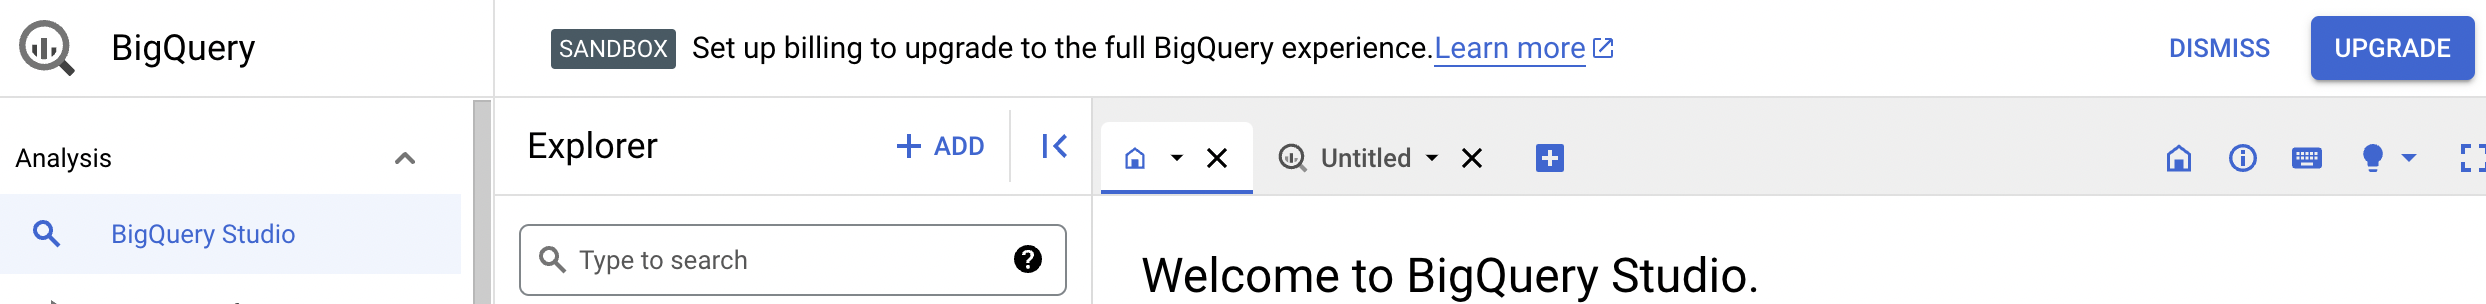 확인 알림에는 전체 BigQuery 환경으로 업그레이드하는 옵션이 제공됩니다.